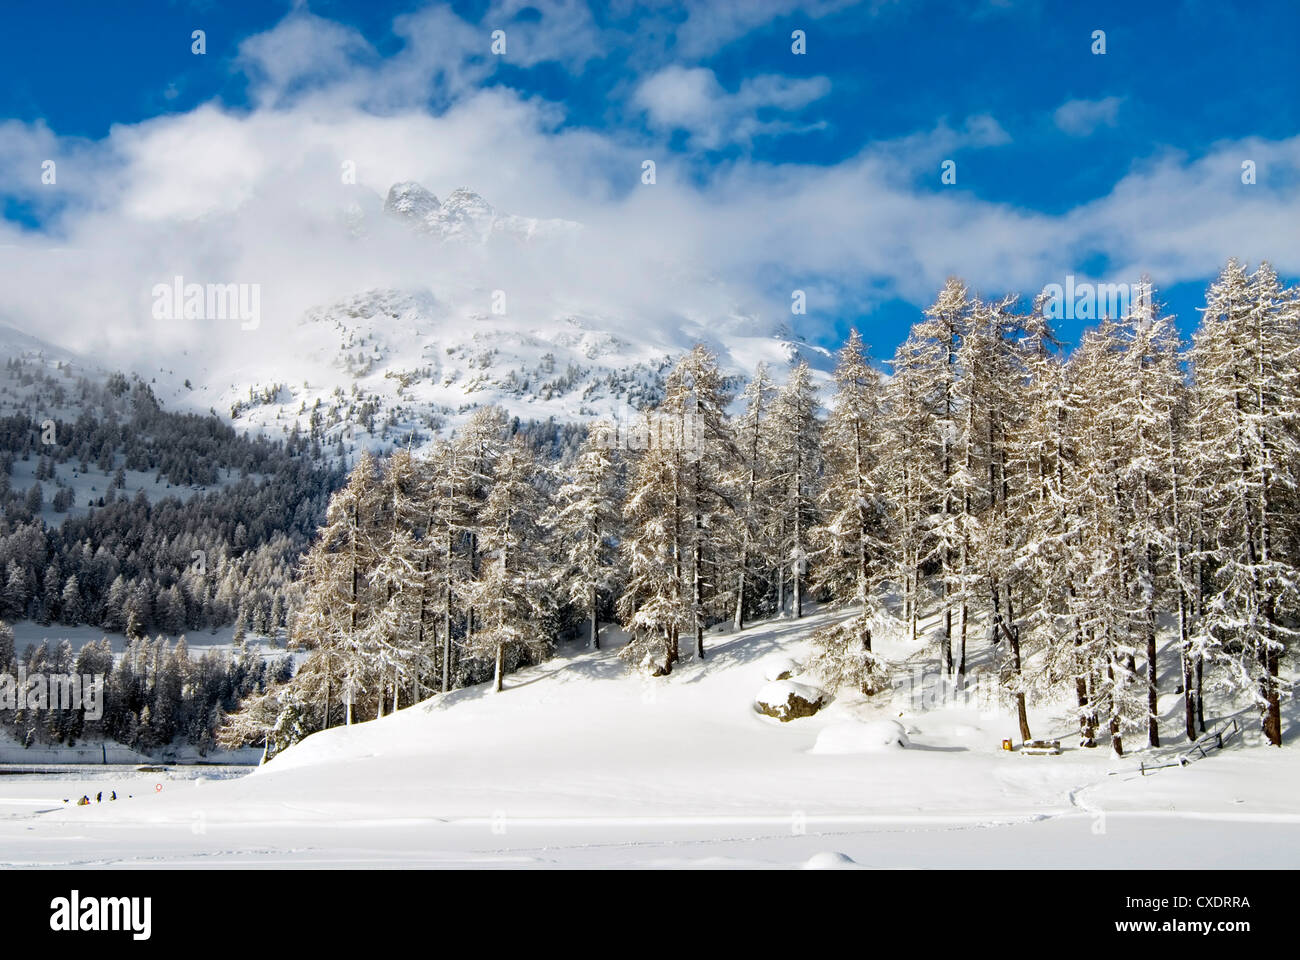 Winterlandscape al lago di Silvaplana con Piz Nair in background, Engadina, Svizzera Foto Stock